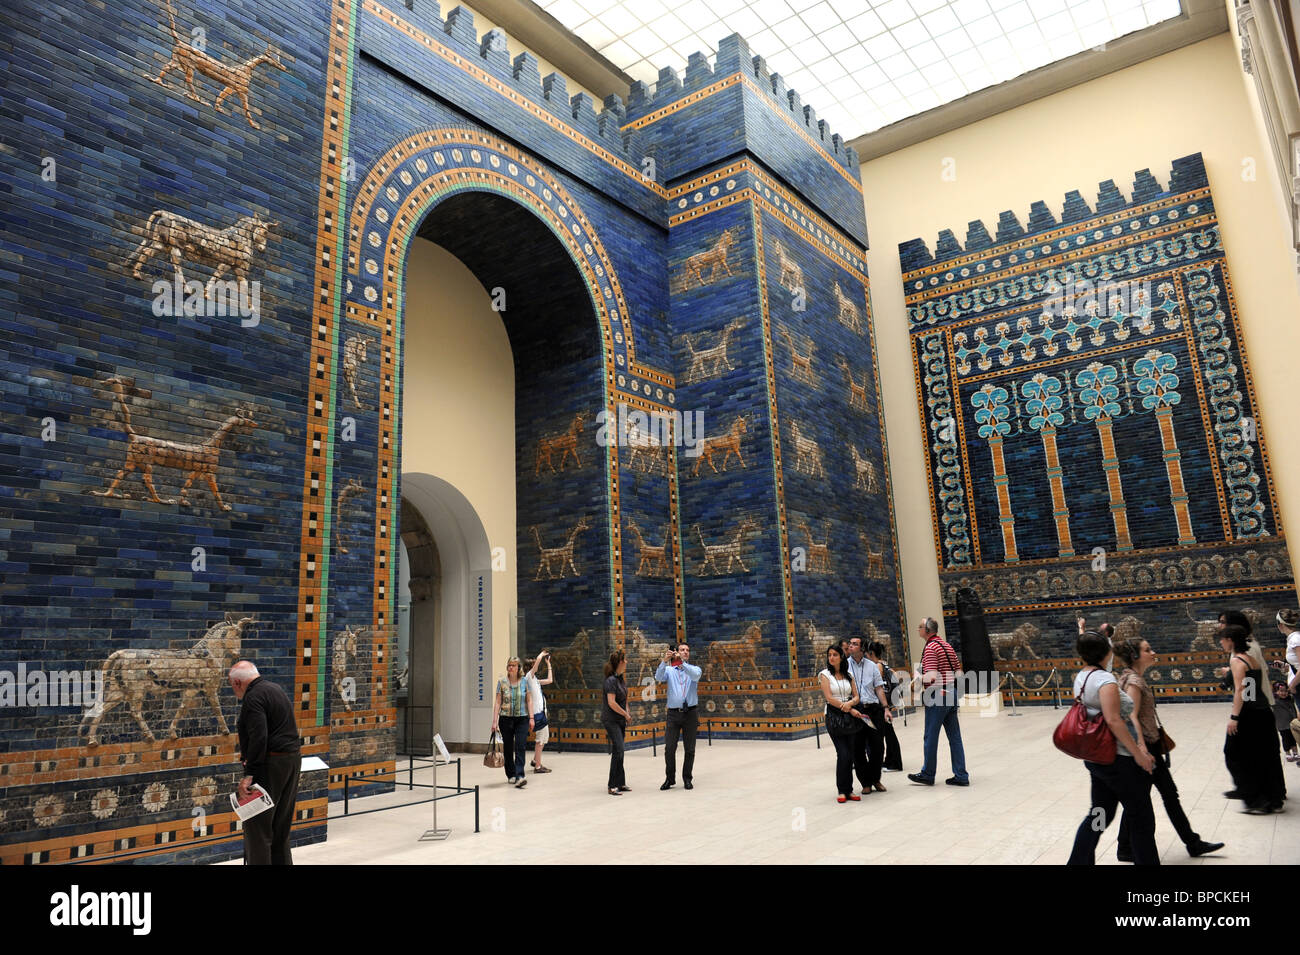 Les anciens murs de Babylone, le Pergamonmuseum Musée de Pergame à Berlin Allemagne Île Musée Deutschland Europe Banque D'Images